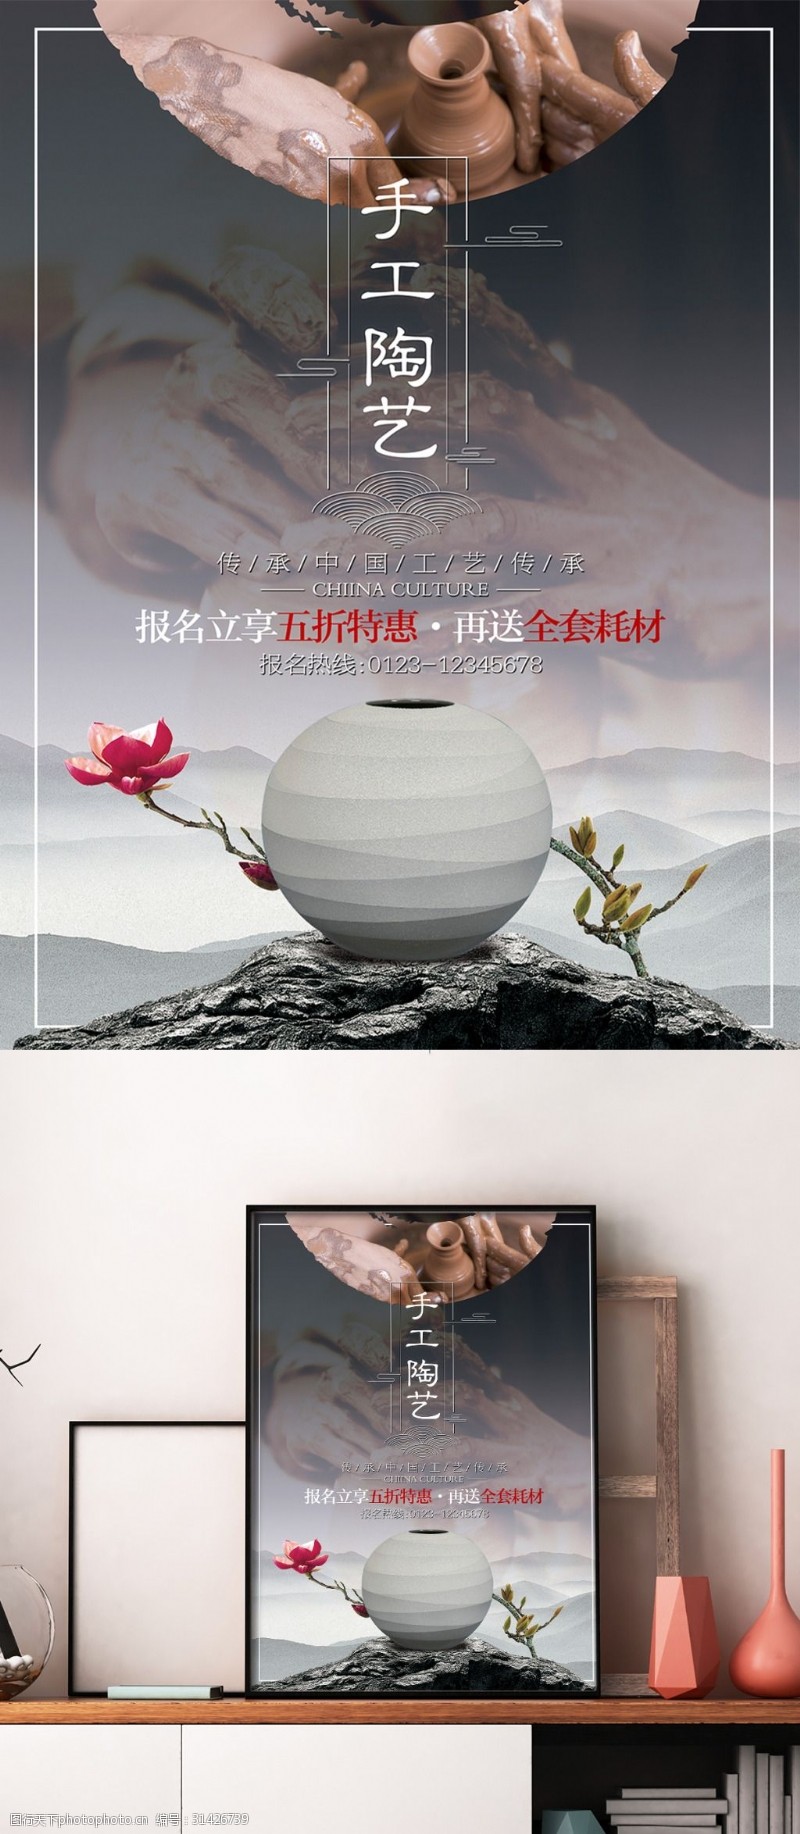 中国风陶瓷海报中国风陶艺培训班促销海报